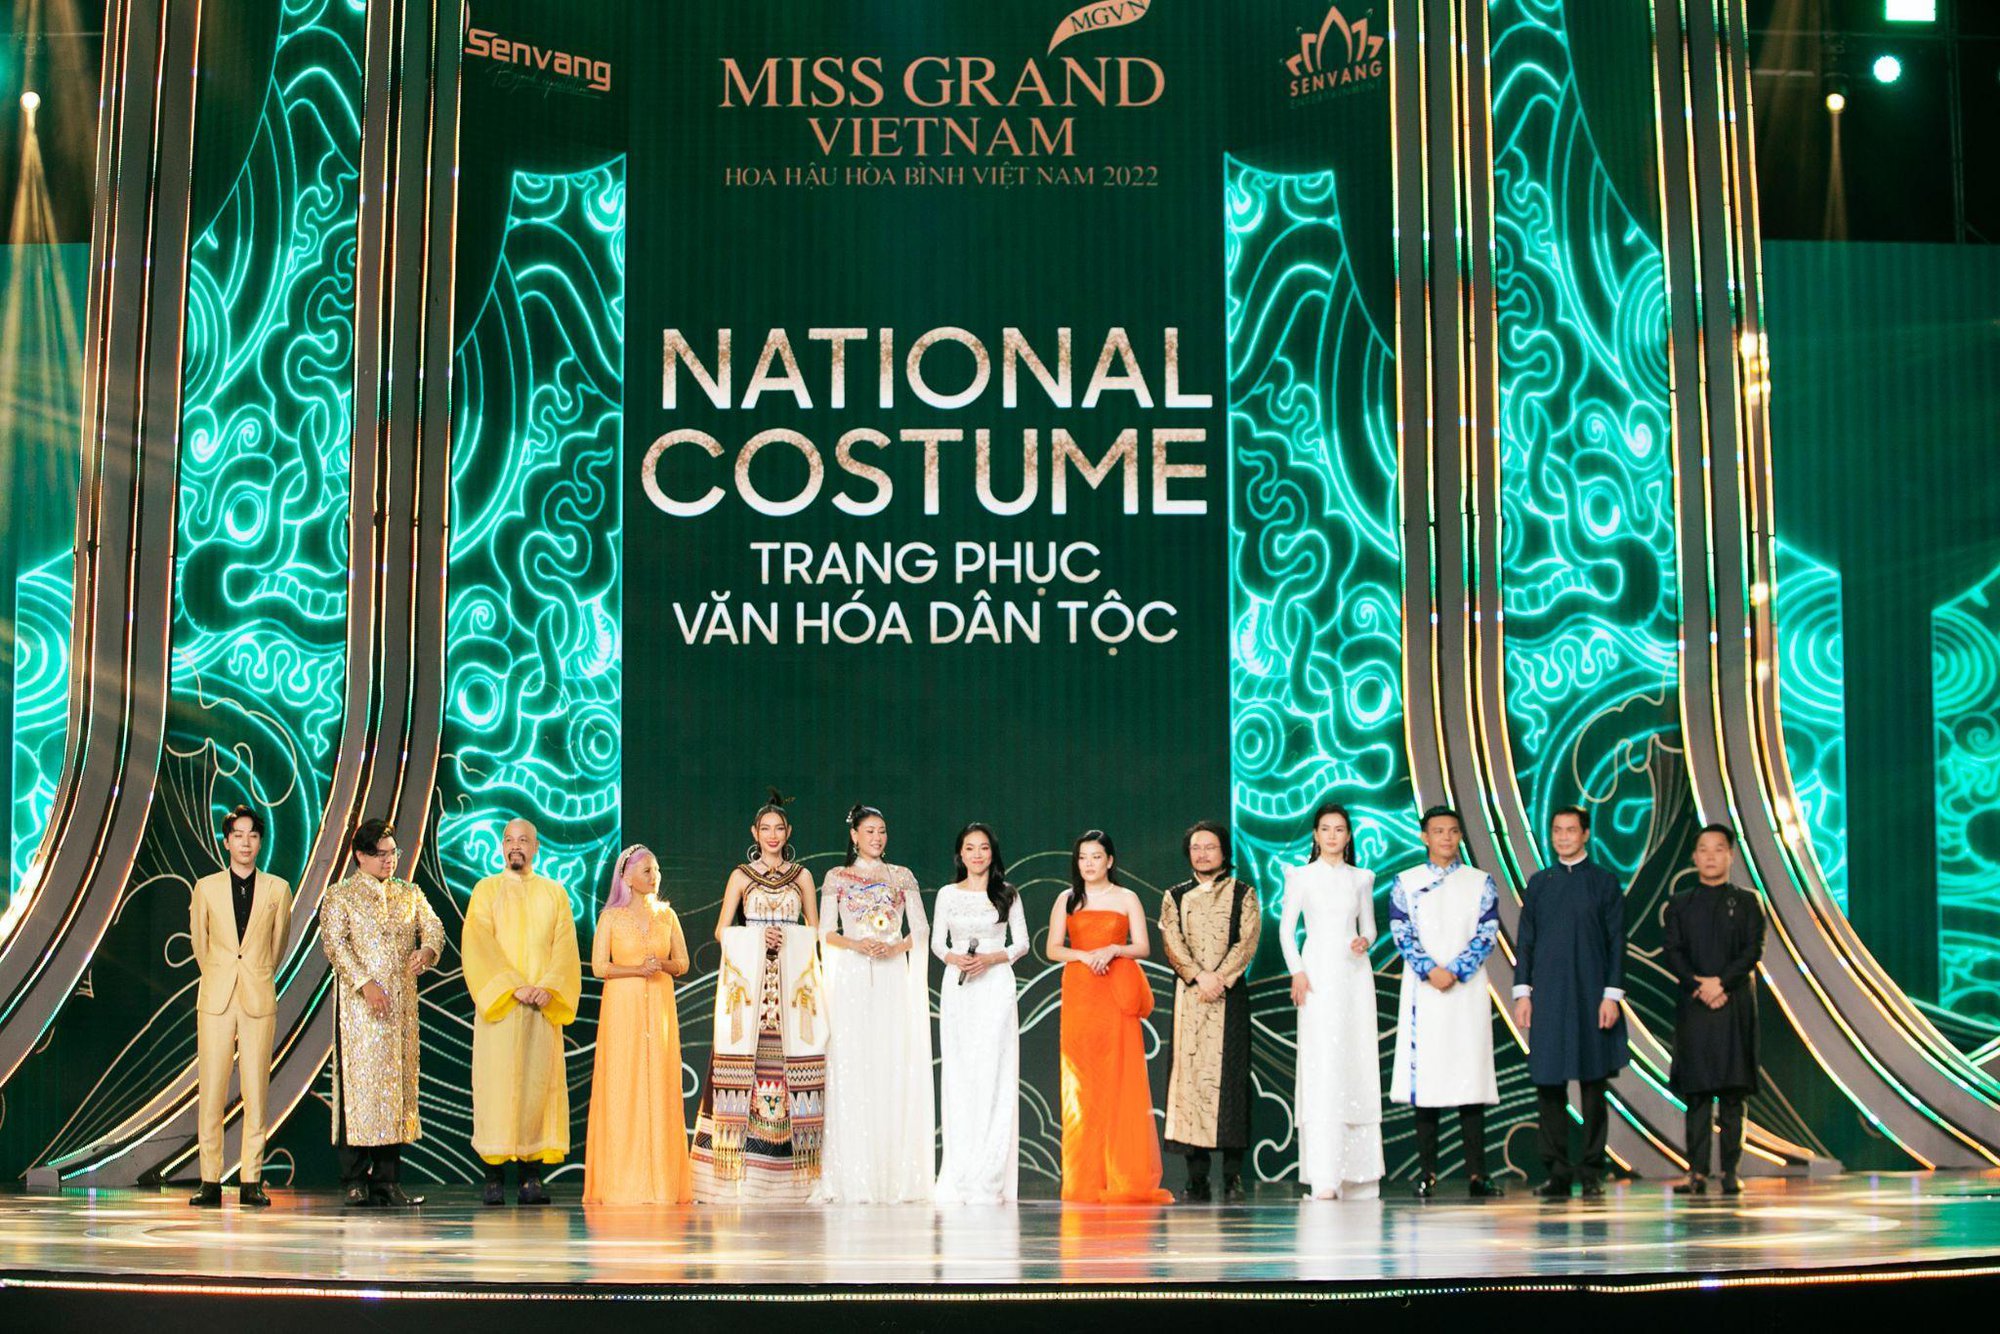 BGK Miss Grand Vietnam nói gì về quan điểm Trang phục Văn hóa dân tộc thiếu tính thời trang? - Ảnh 1.